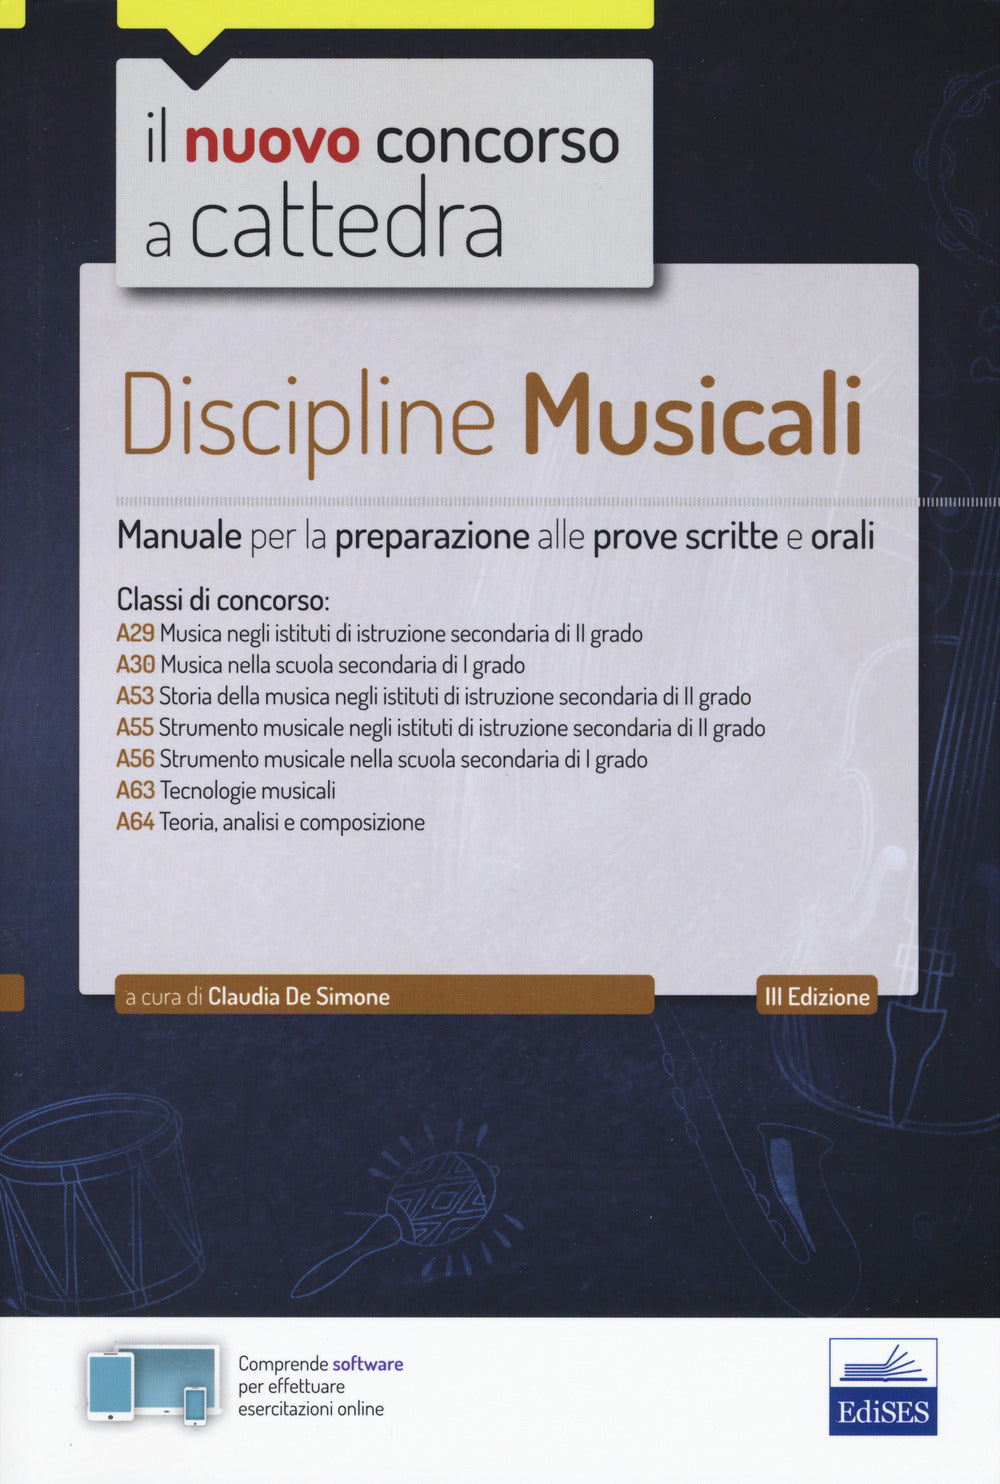 Discipline musicali nella scuola secondaria. Manuale per la preparazione alle prove scritte e orali classi A29, A30, A53, A55, A56, A63, A64. Con software di simulazione.